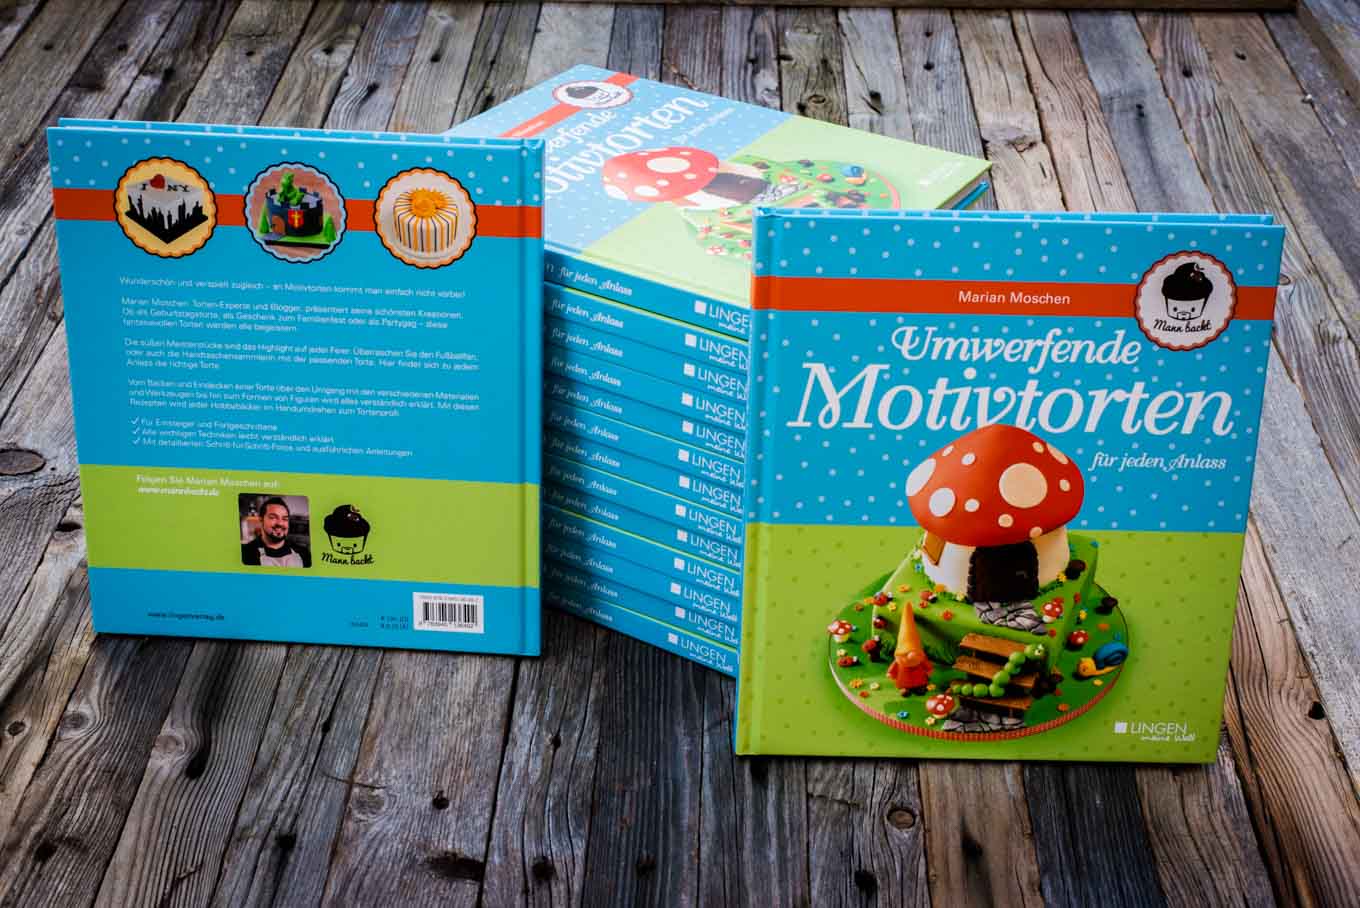 Mann backt Marian Moschen Umwerfende Motivtorten für jeden Anlass Lingen Verlag Motivtortenbuch Motivtorten Buch (2 von 8)